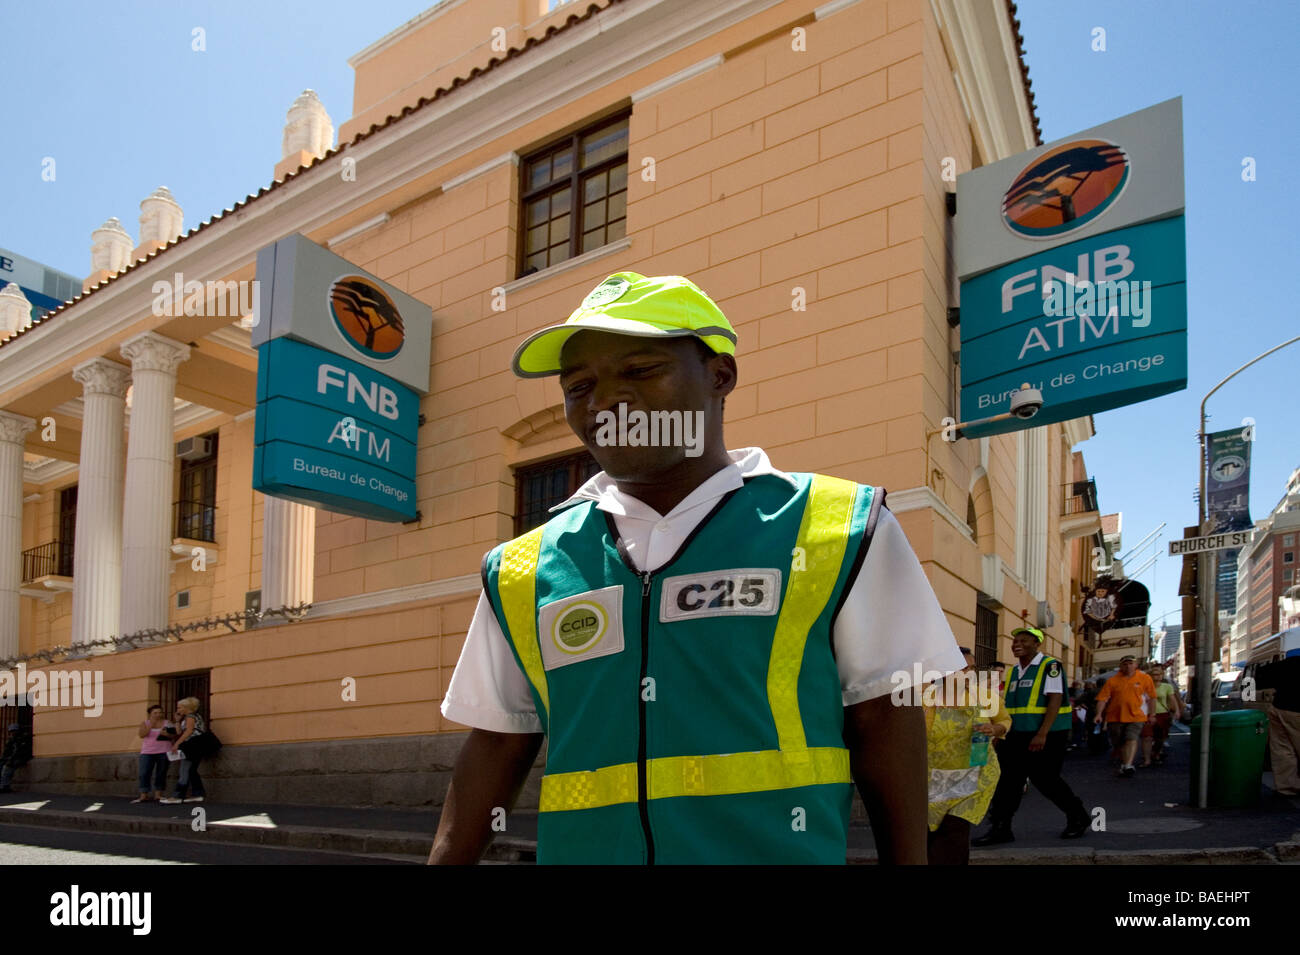 Gardien de sécurité dans Long Street Cape Town Afrique du Sud Banque D'Images